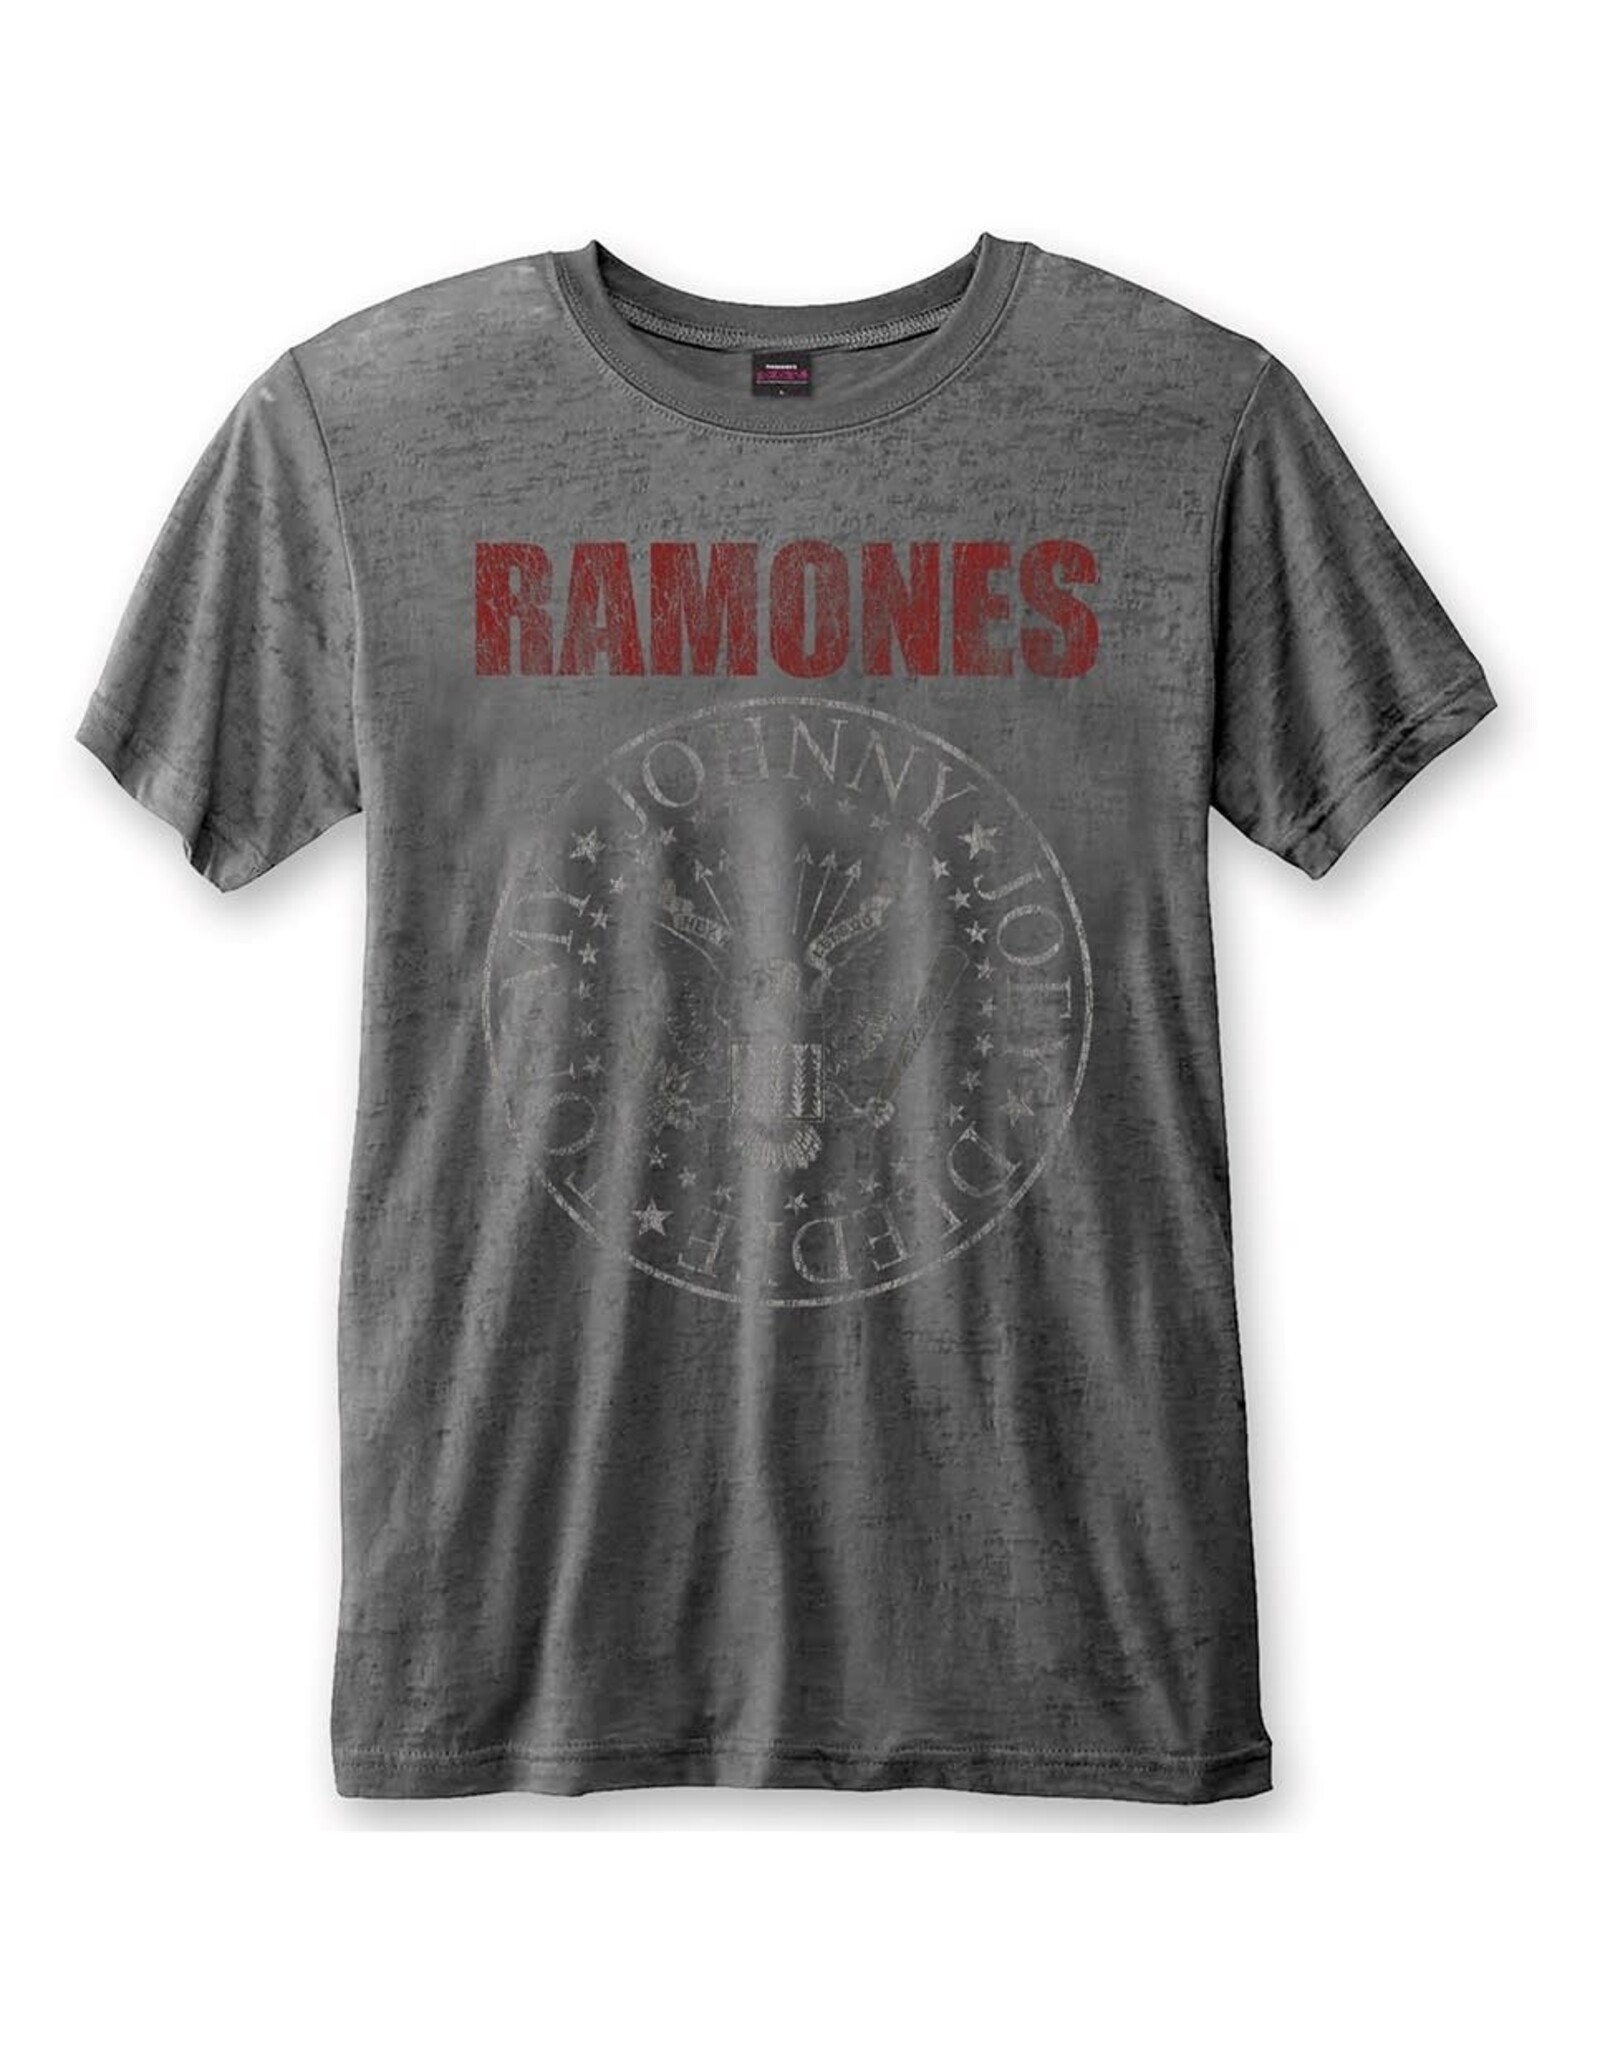 Ramones - Classic Logo Premium Burnout T-Shirt - Pop Music